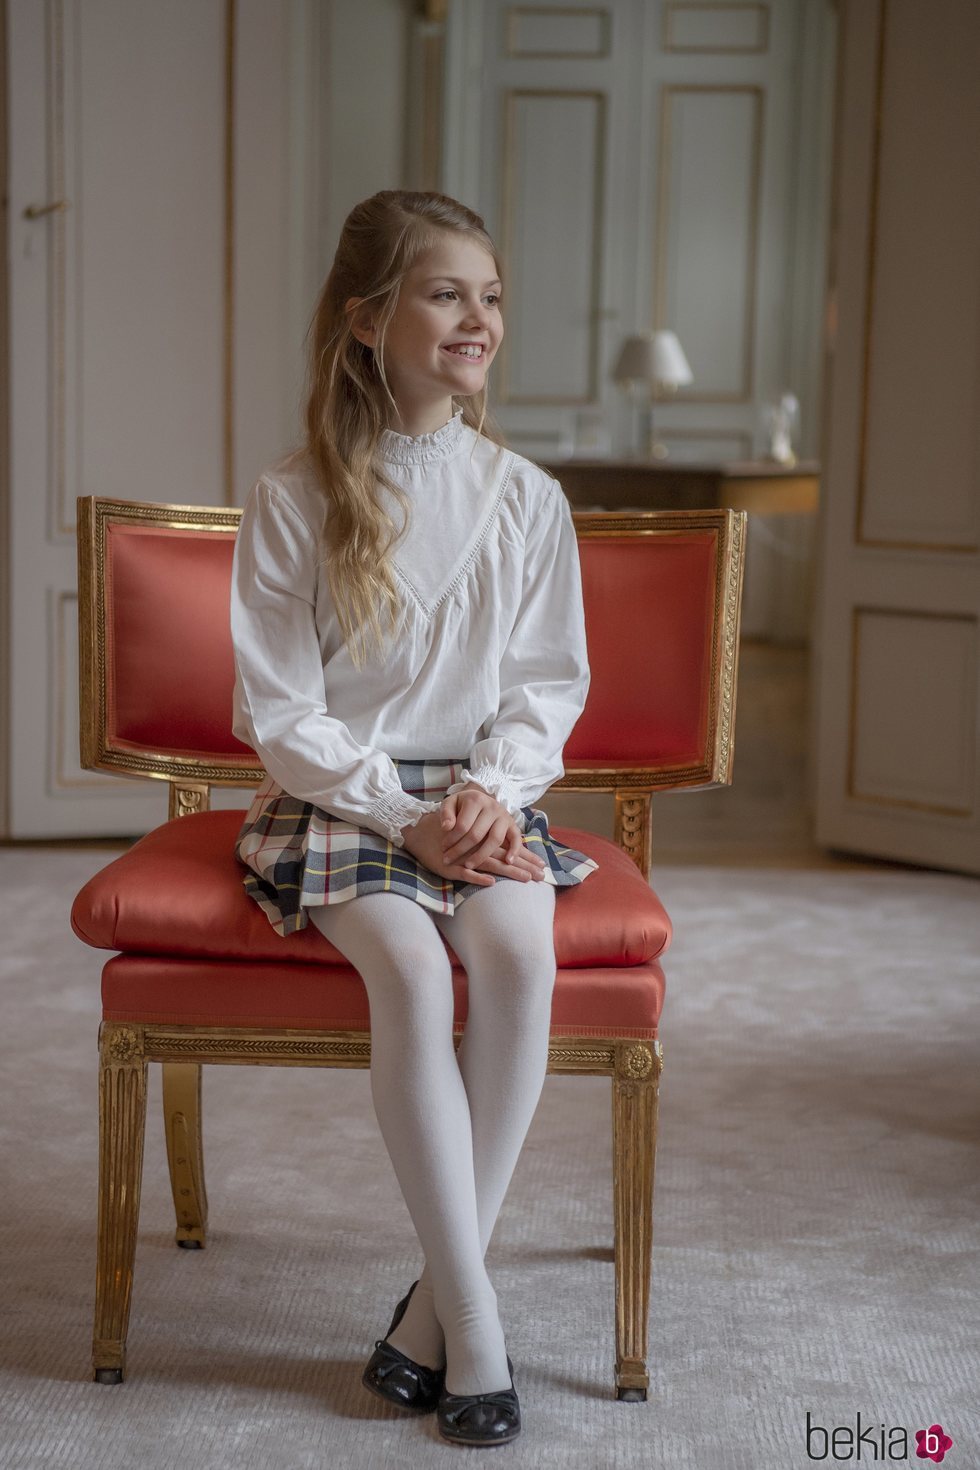 Estela de Suecia en una silla en su 9 cumpleaños